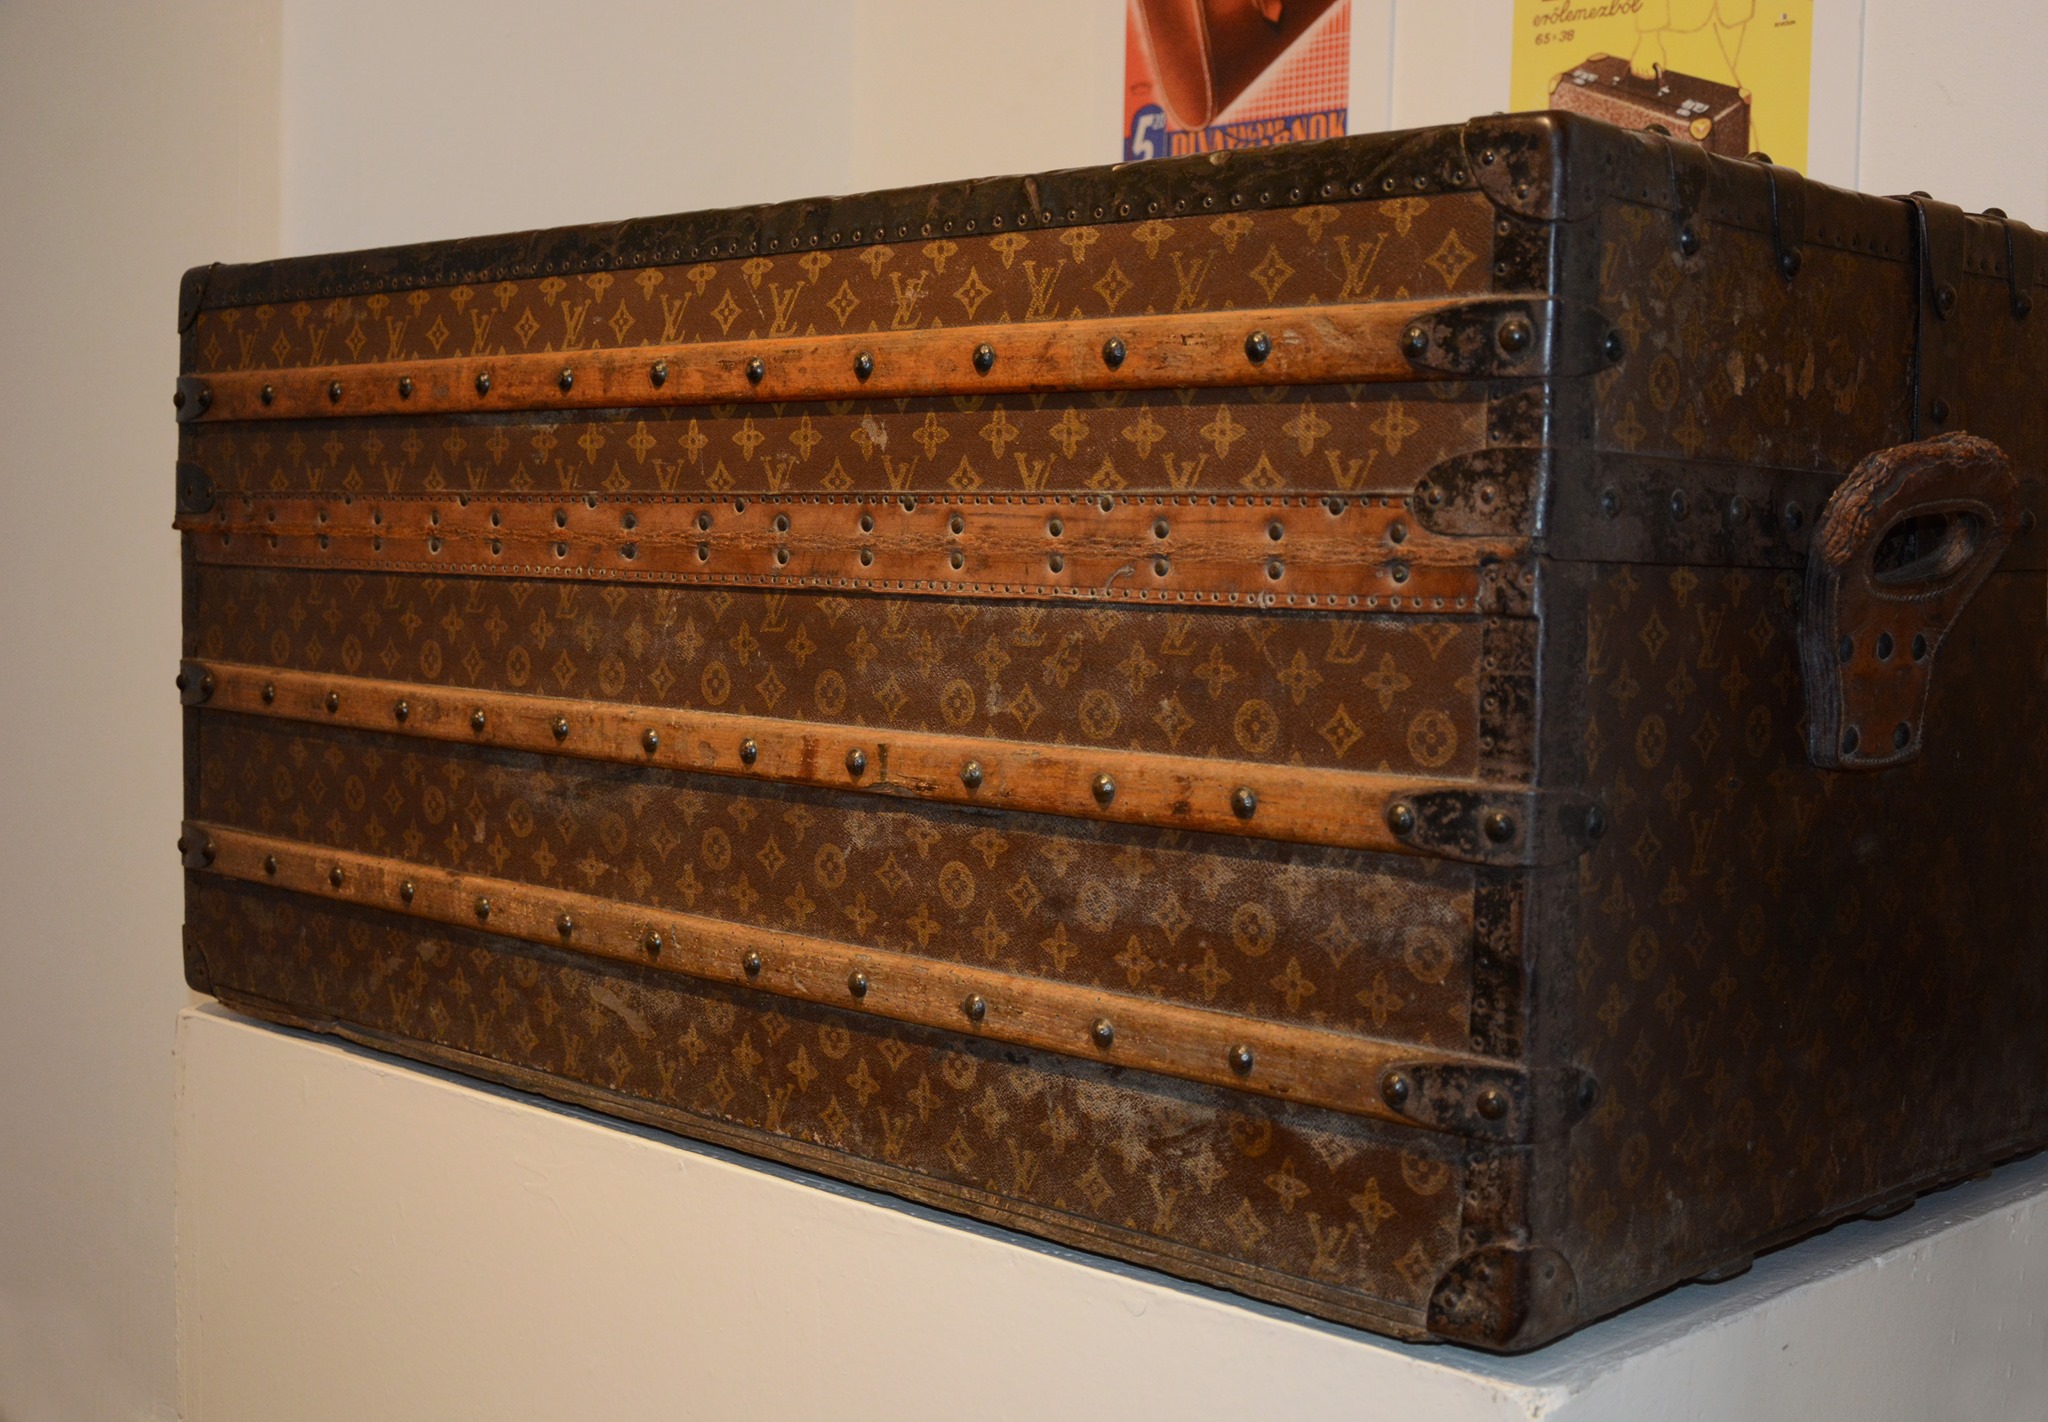 Több mint százéves ez Louis Vuitton útiláda! Hercegek is utaztak vele